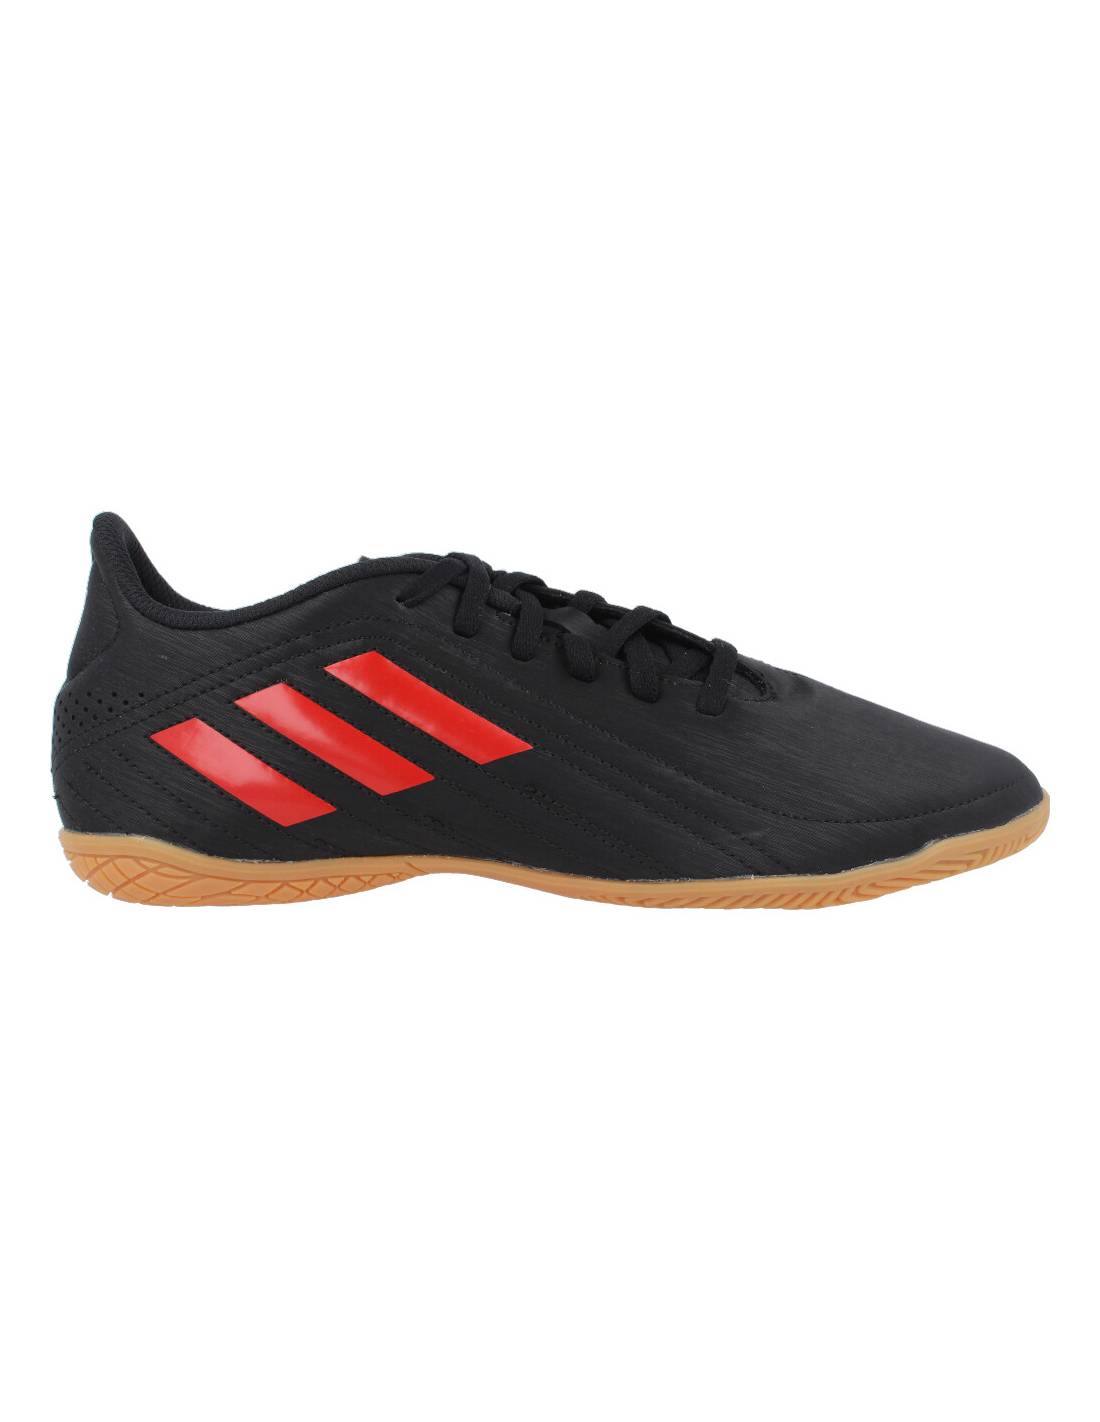 Adidas - Zapatilla Indoor Fútbol Sala Negro/Rojo